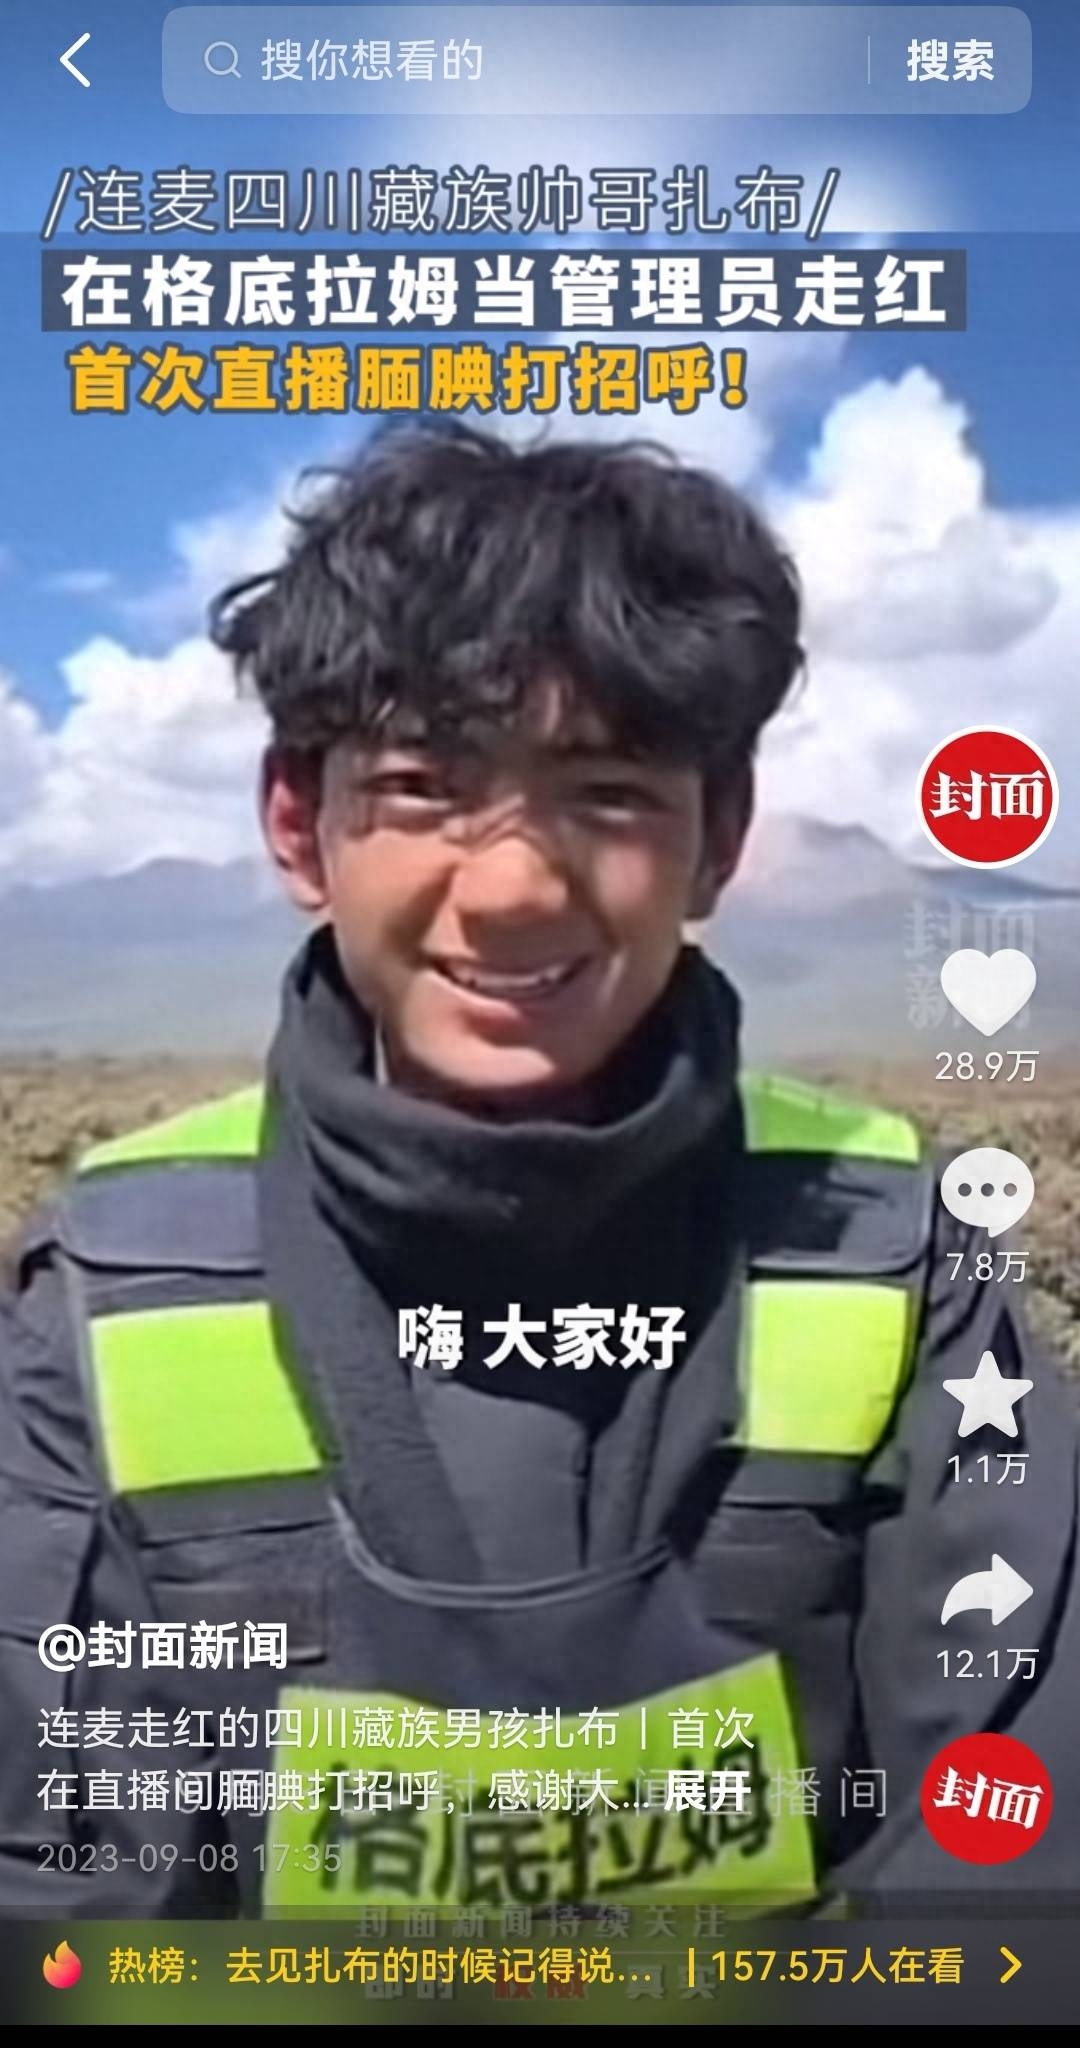 “感谢大家的关注和喜欢！” 四川藏族小伙扎布直播首秀超千万人围观